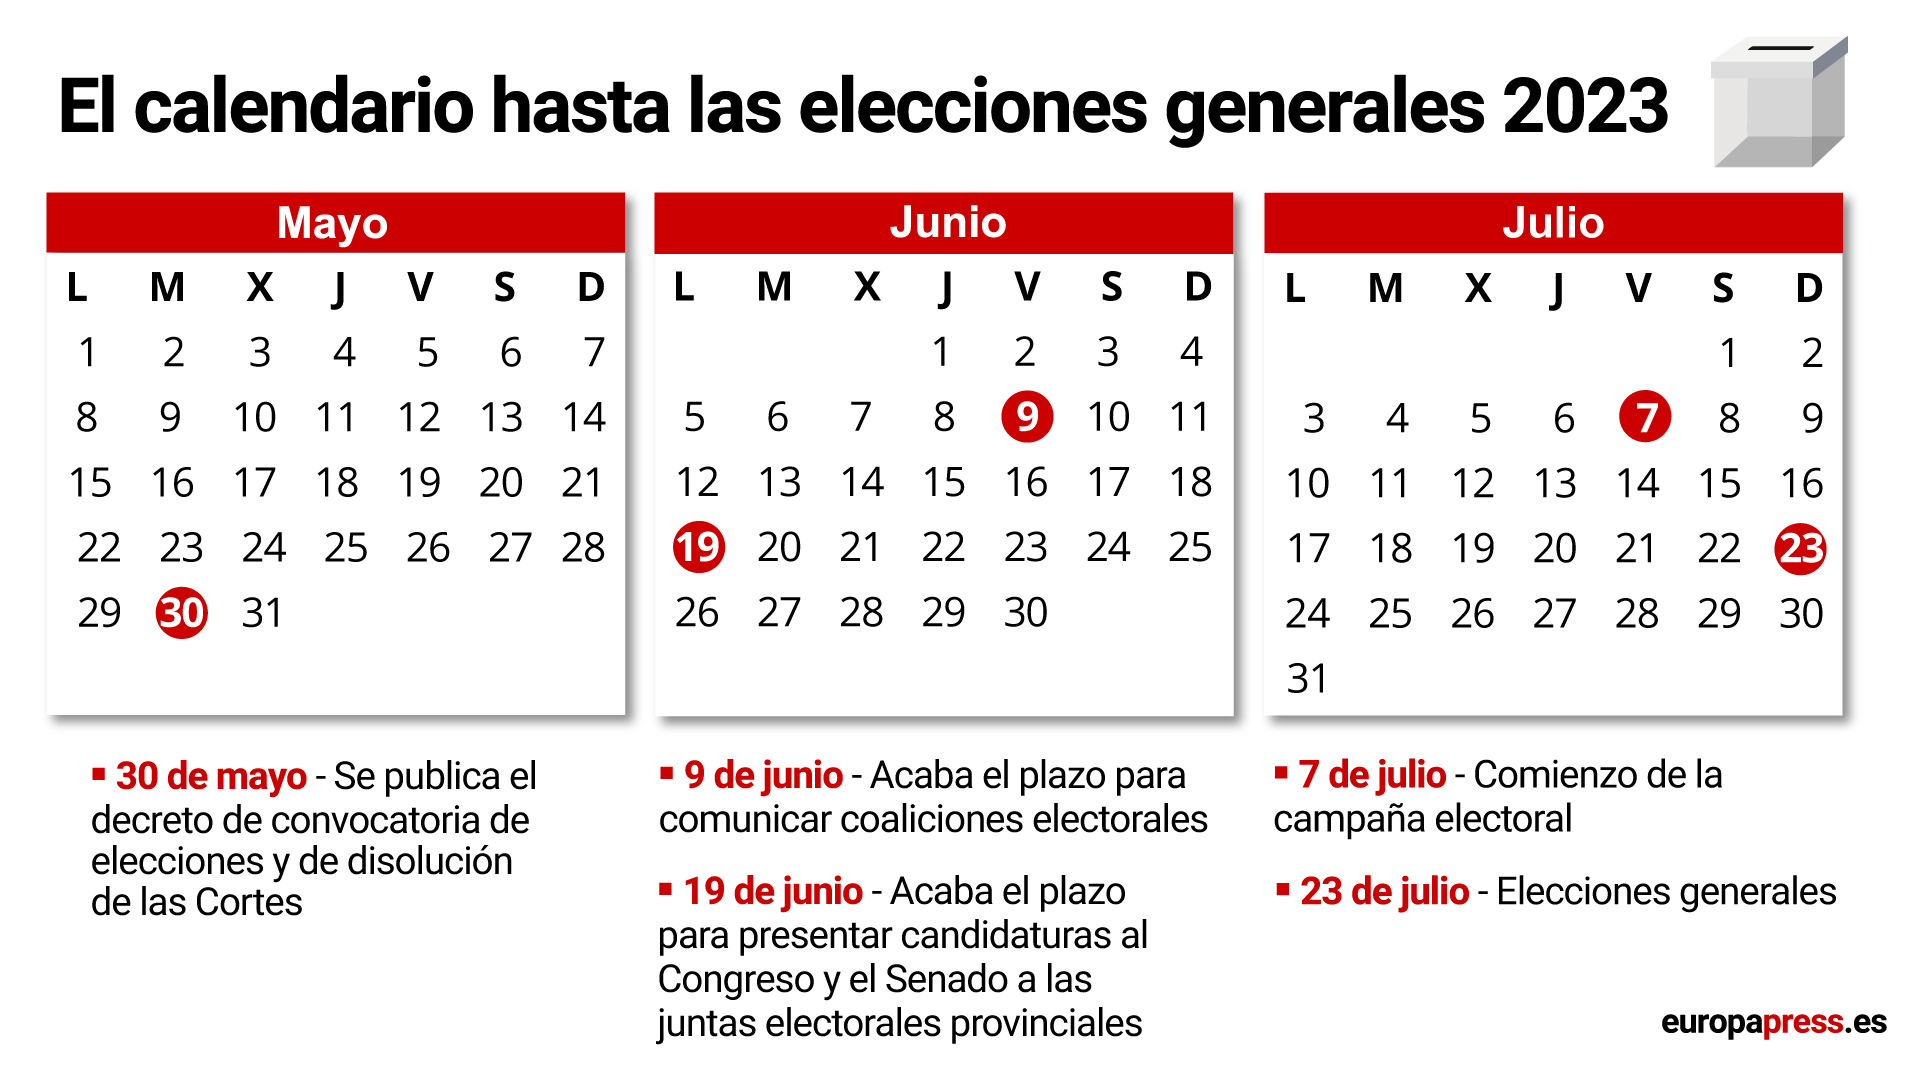 Calendario de las elecciones generales del 23 de julio